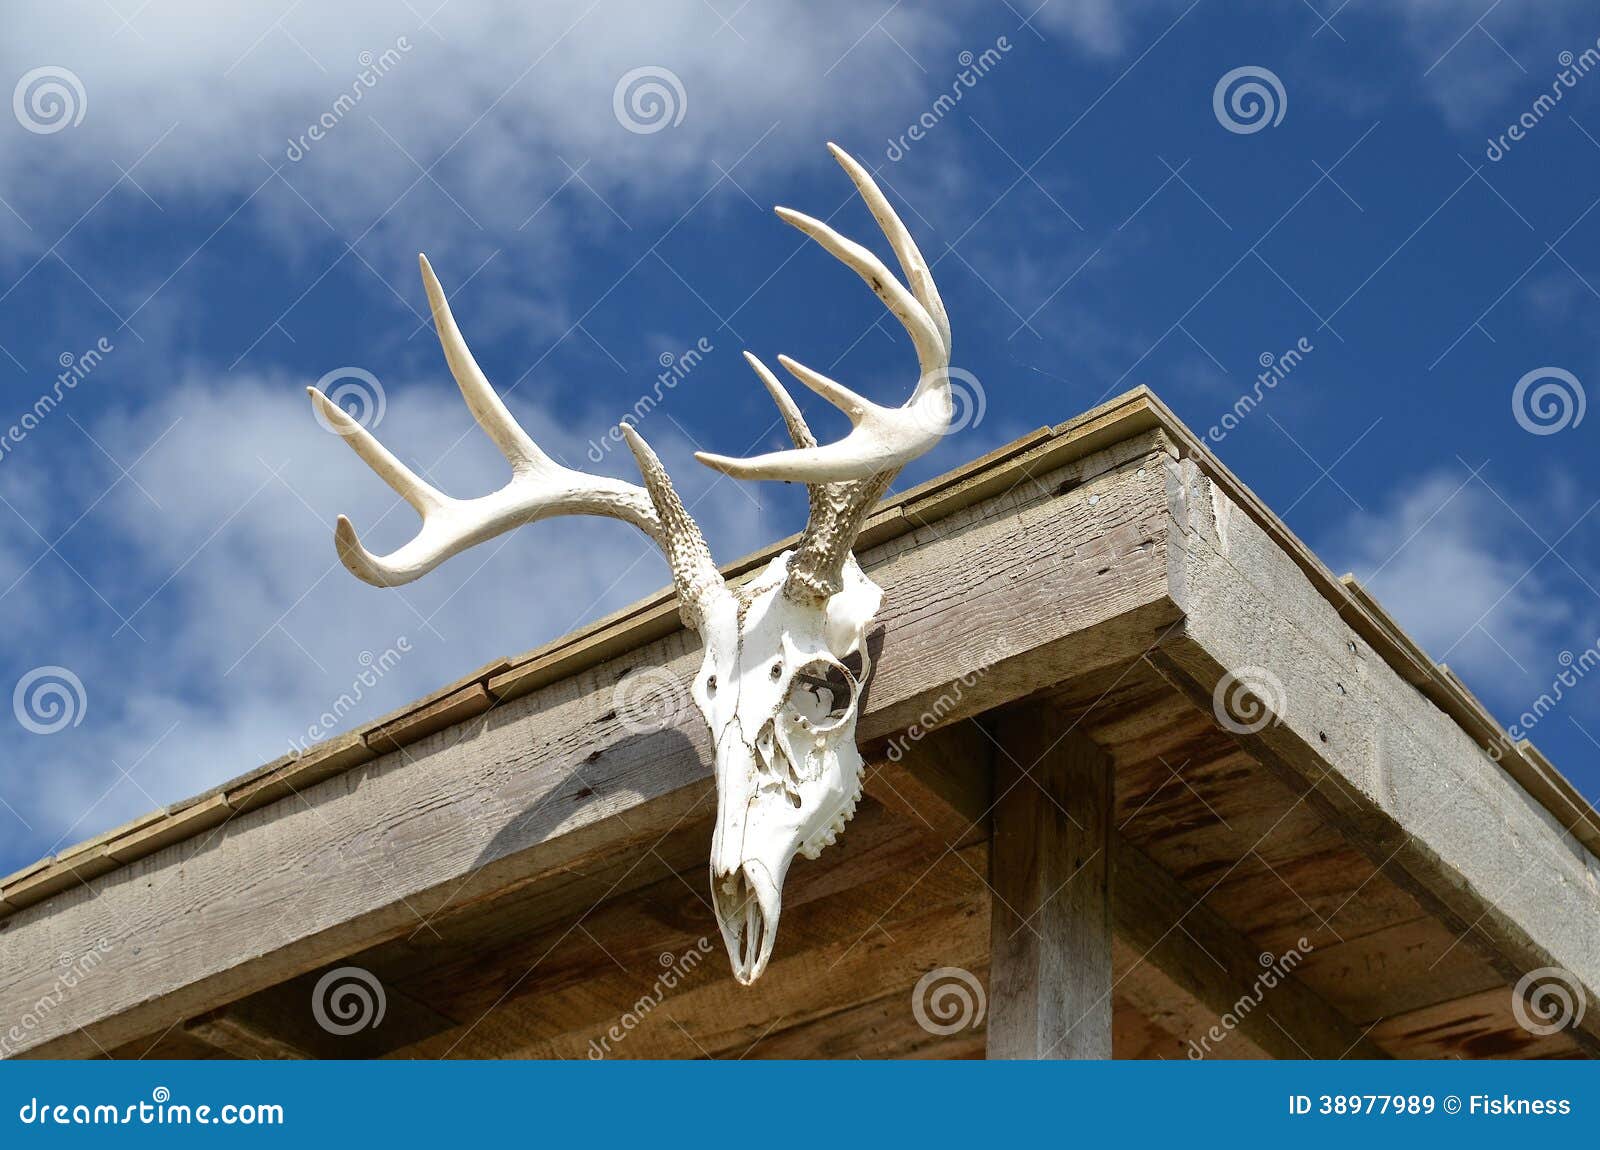 deer antlers on cabin